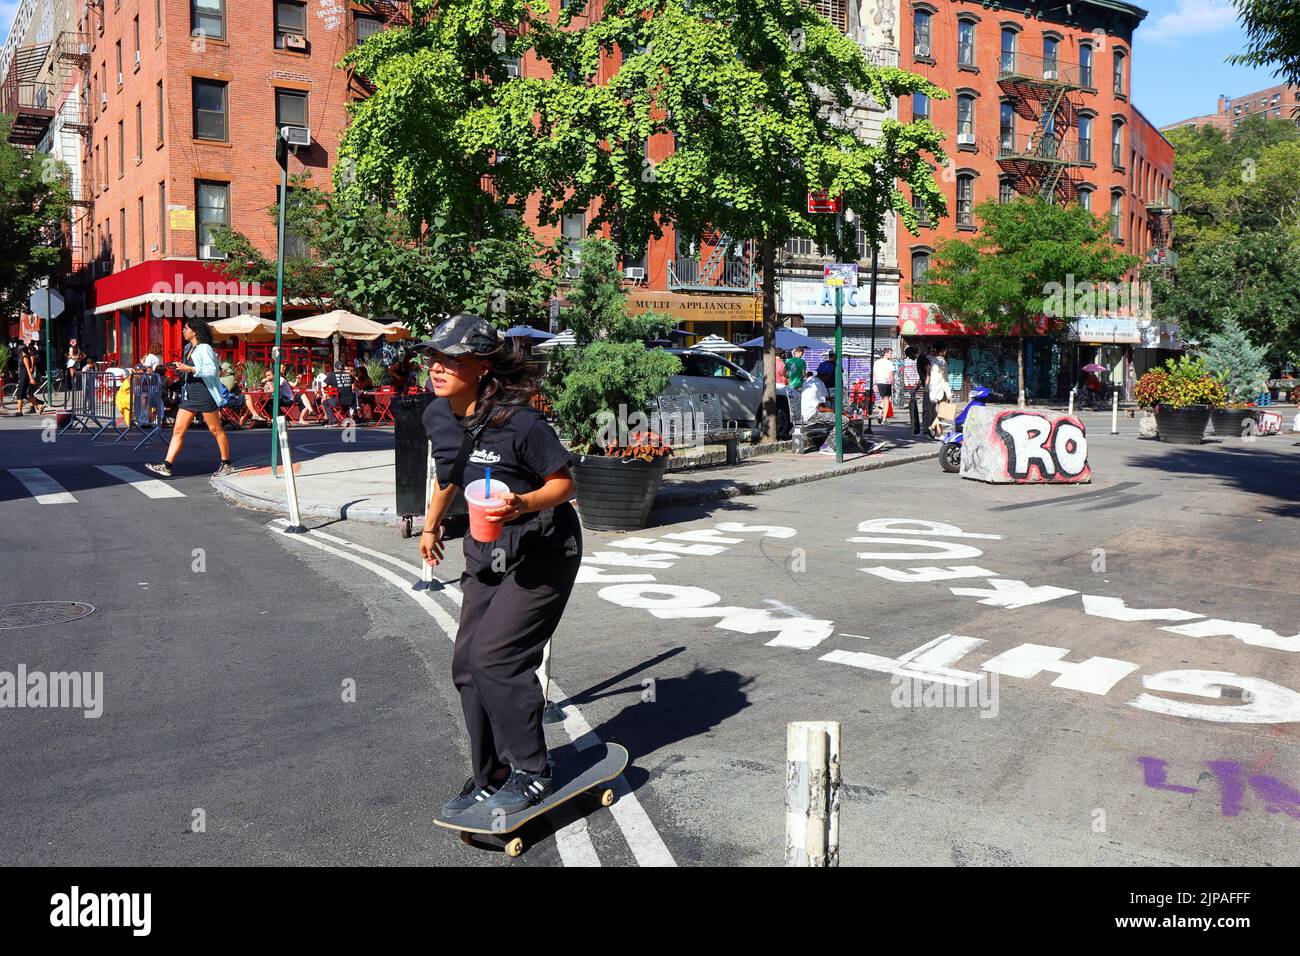 Une femme skateboarder avec une sluschie de pastèque de la taille d'un quart passe devant une rue verte de New York dans le quartier chinois de 'Dimes Square' de Manhattan/Lower East Side Banque D'Images